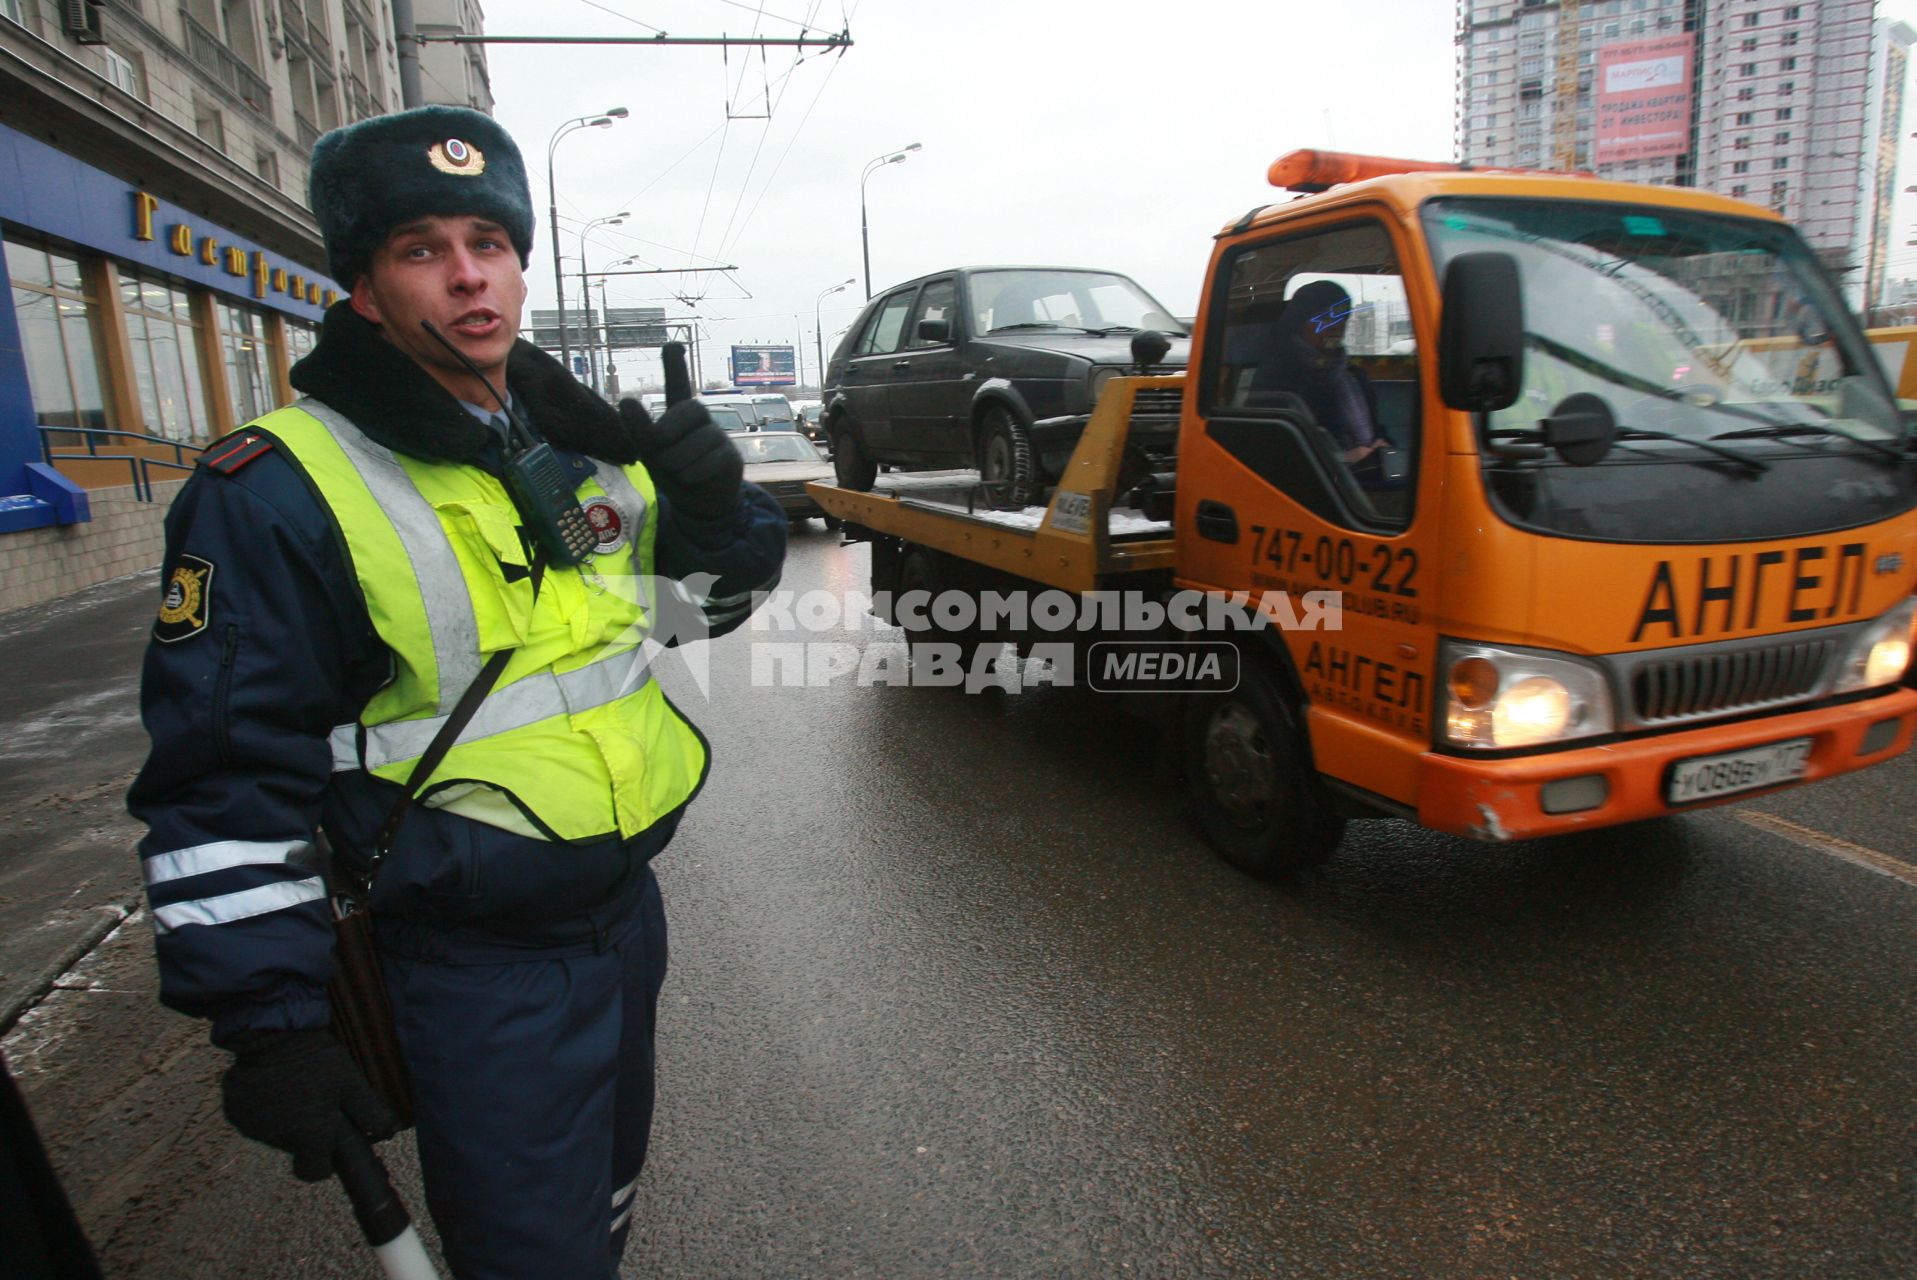 Сотрудник ДПС несет службу на оживленной улице, мимо проезжает автомобиль эвакуатор на борту везущий другой автомобиль ГОЛЬФ. 13 декабря 2007 года.